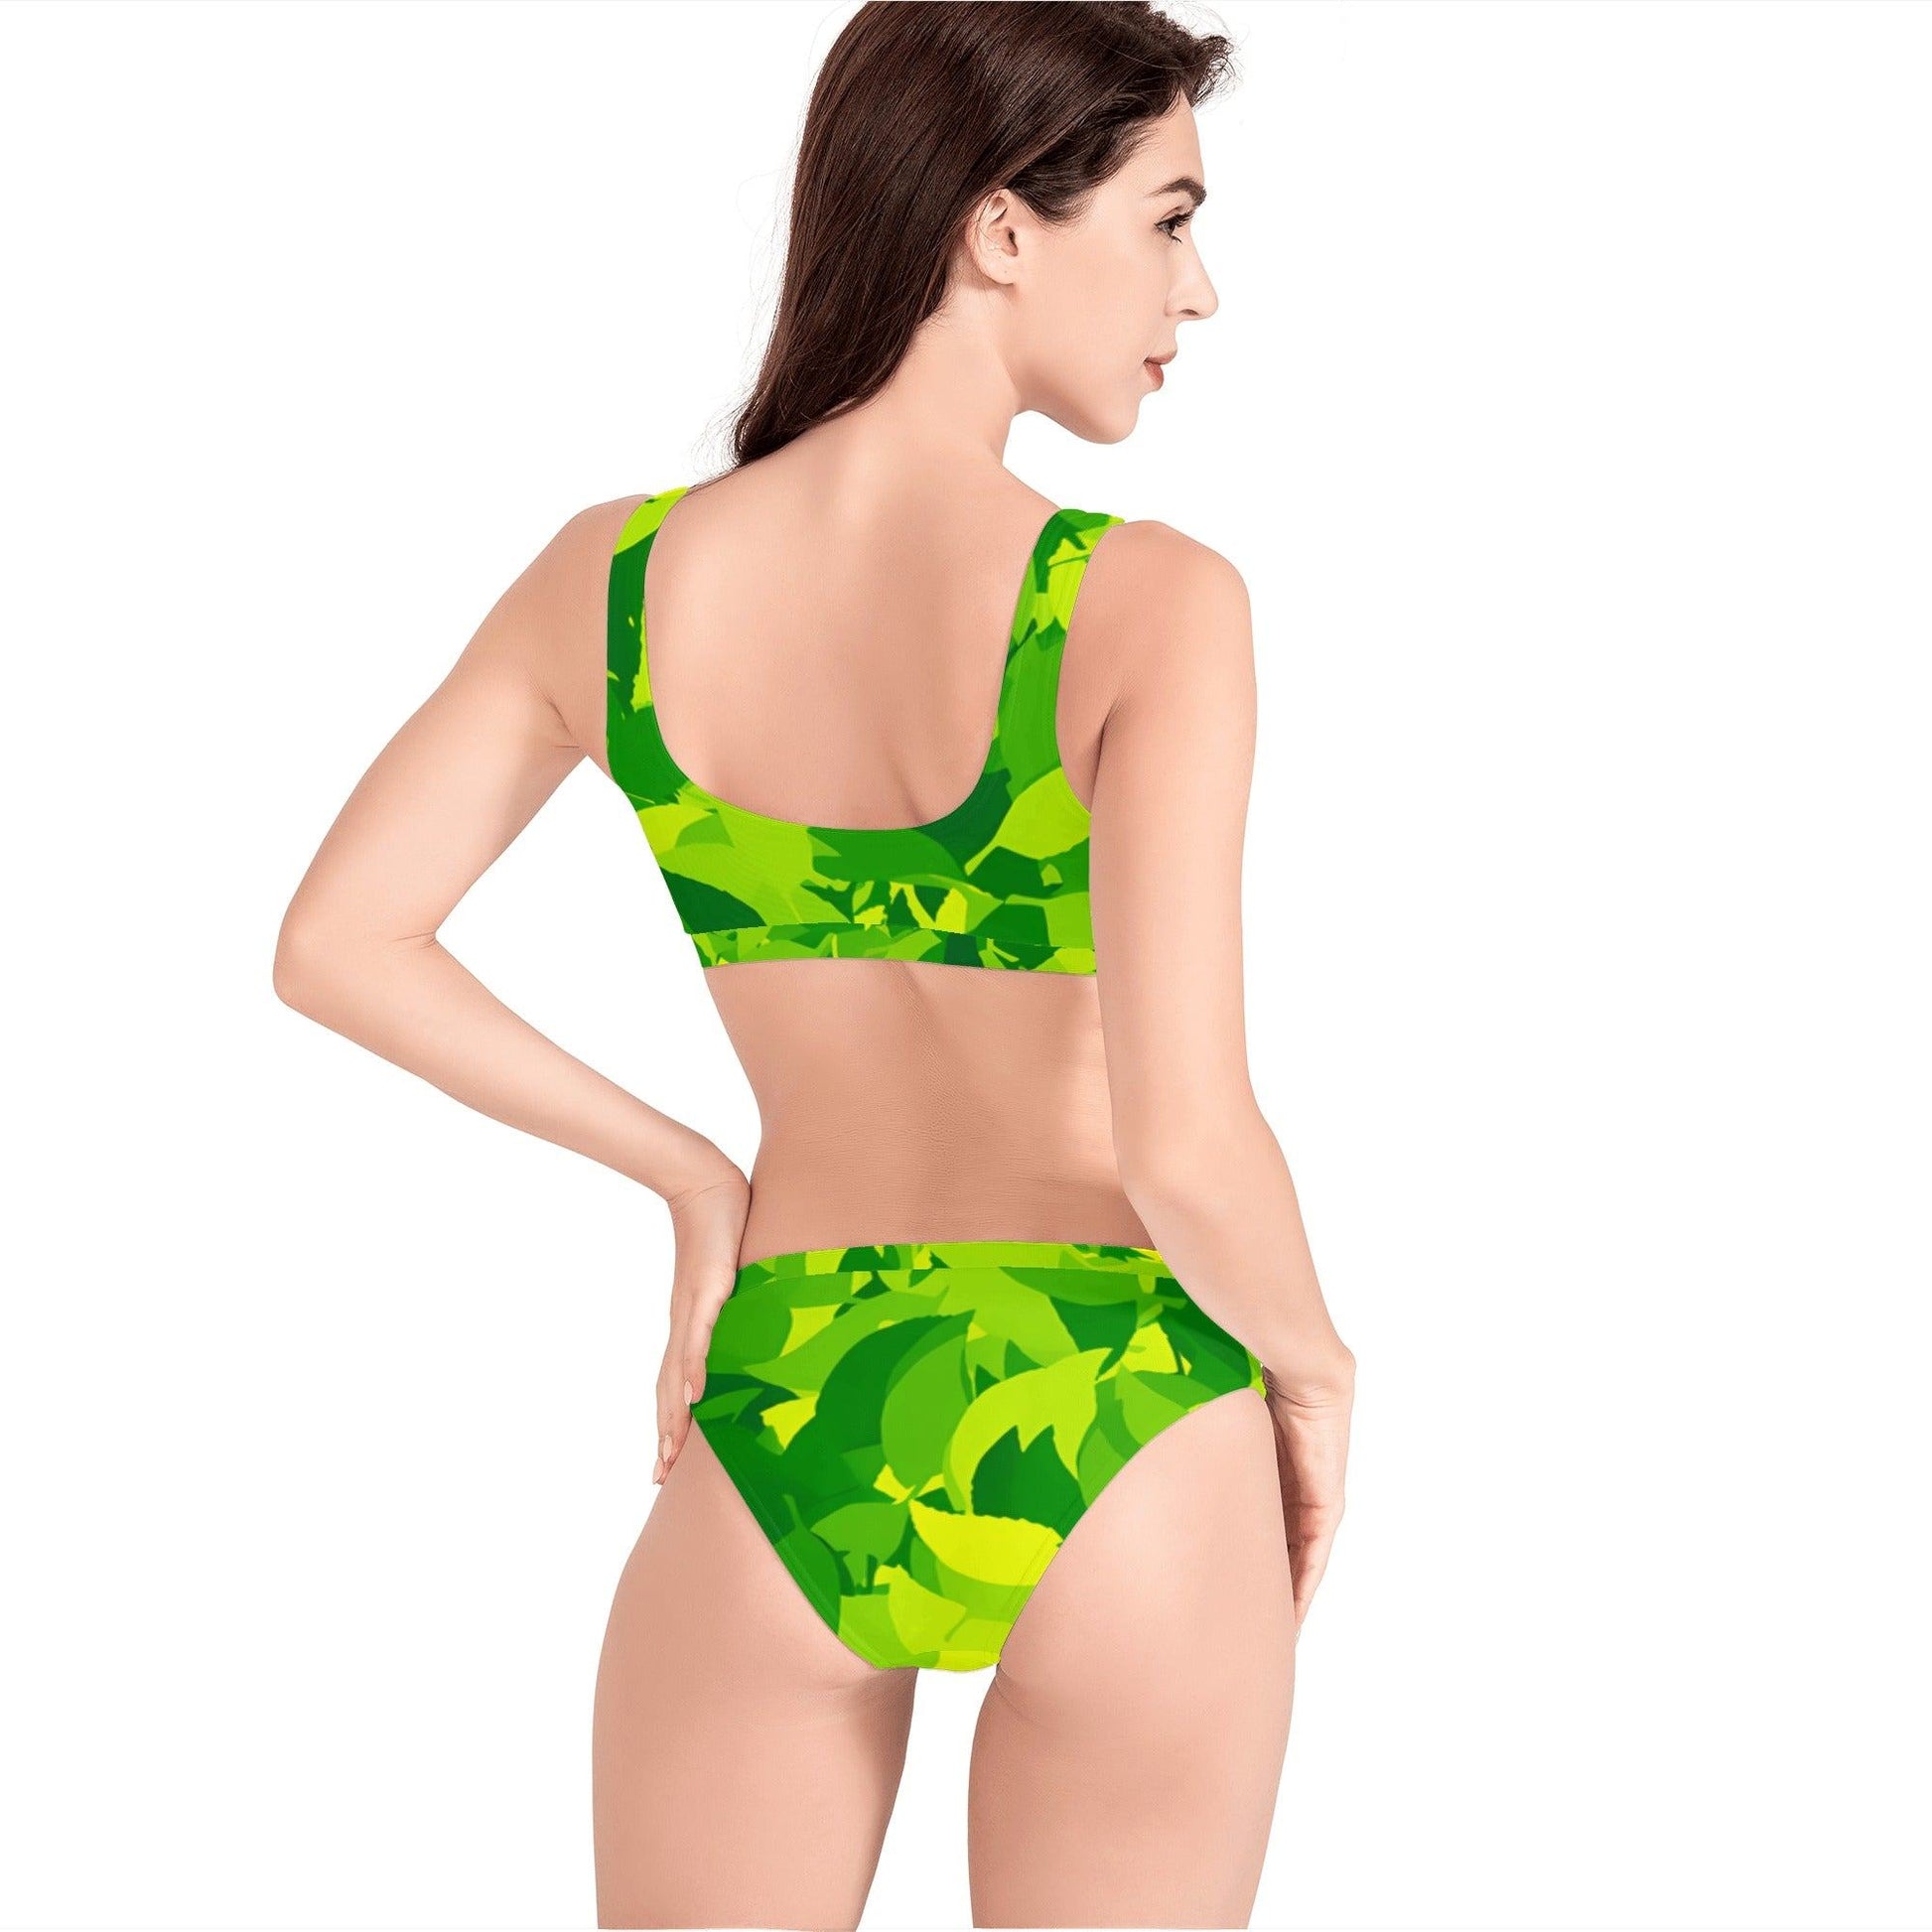 Green Leaf Sport Bikini Sport Bikini 54.99 Bikini, Green, Leaf, Sport JLR Design